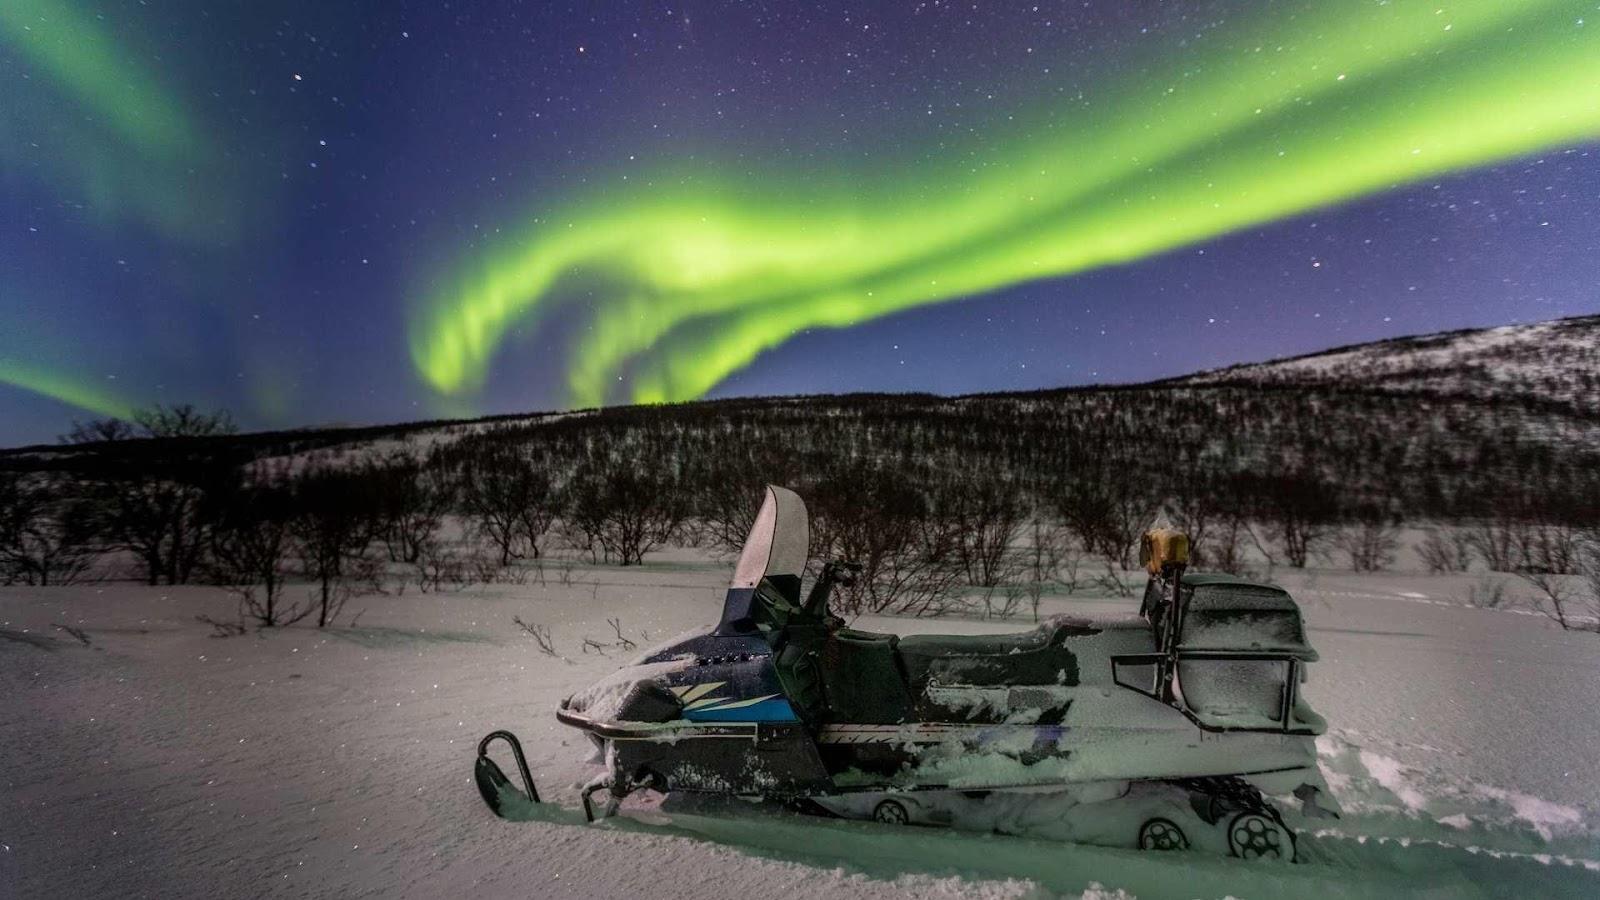 Safari notturno sotto l'aurora boreale per Capodanno